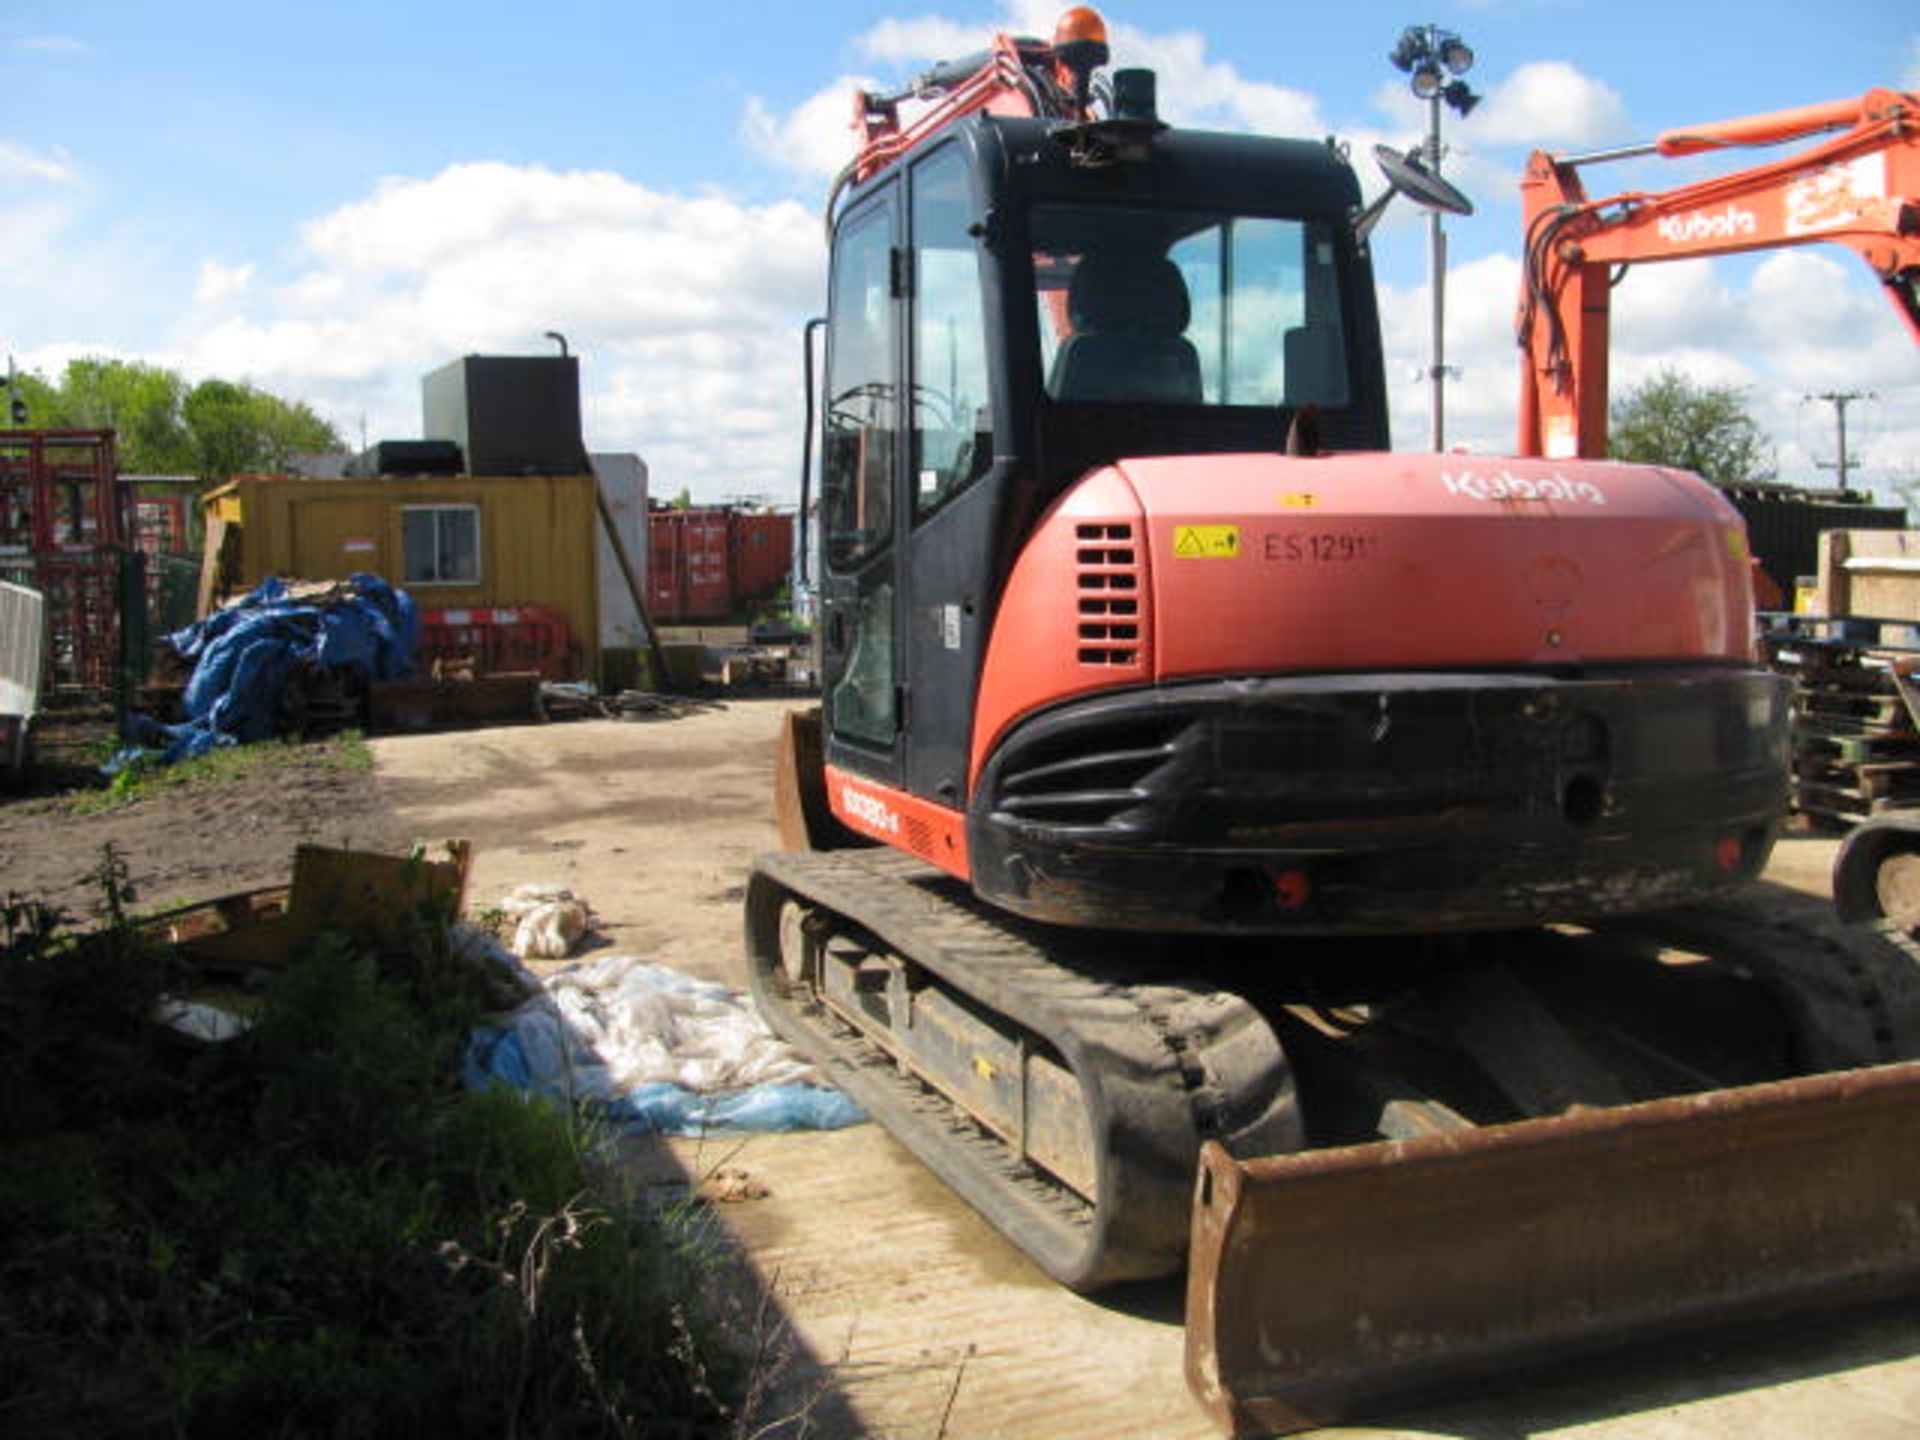 Kubota KX080-4 rubber tracked excavator - Image 7 of 8